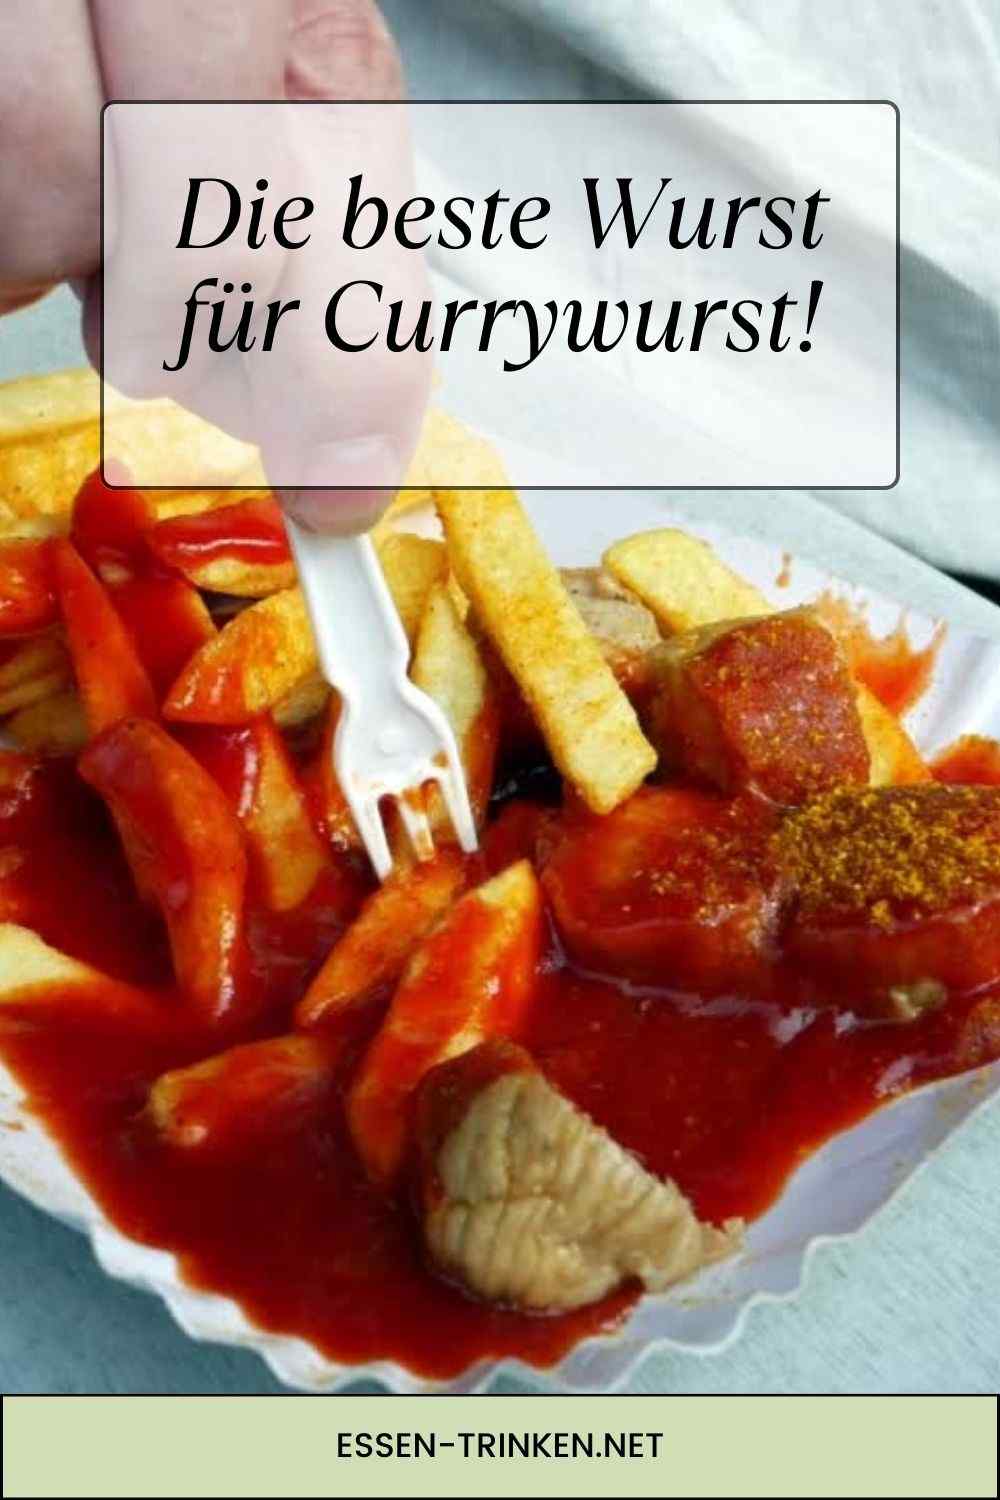 Die beste Wurst für Currywurst